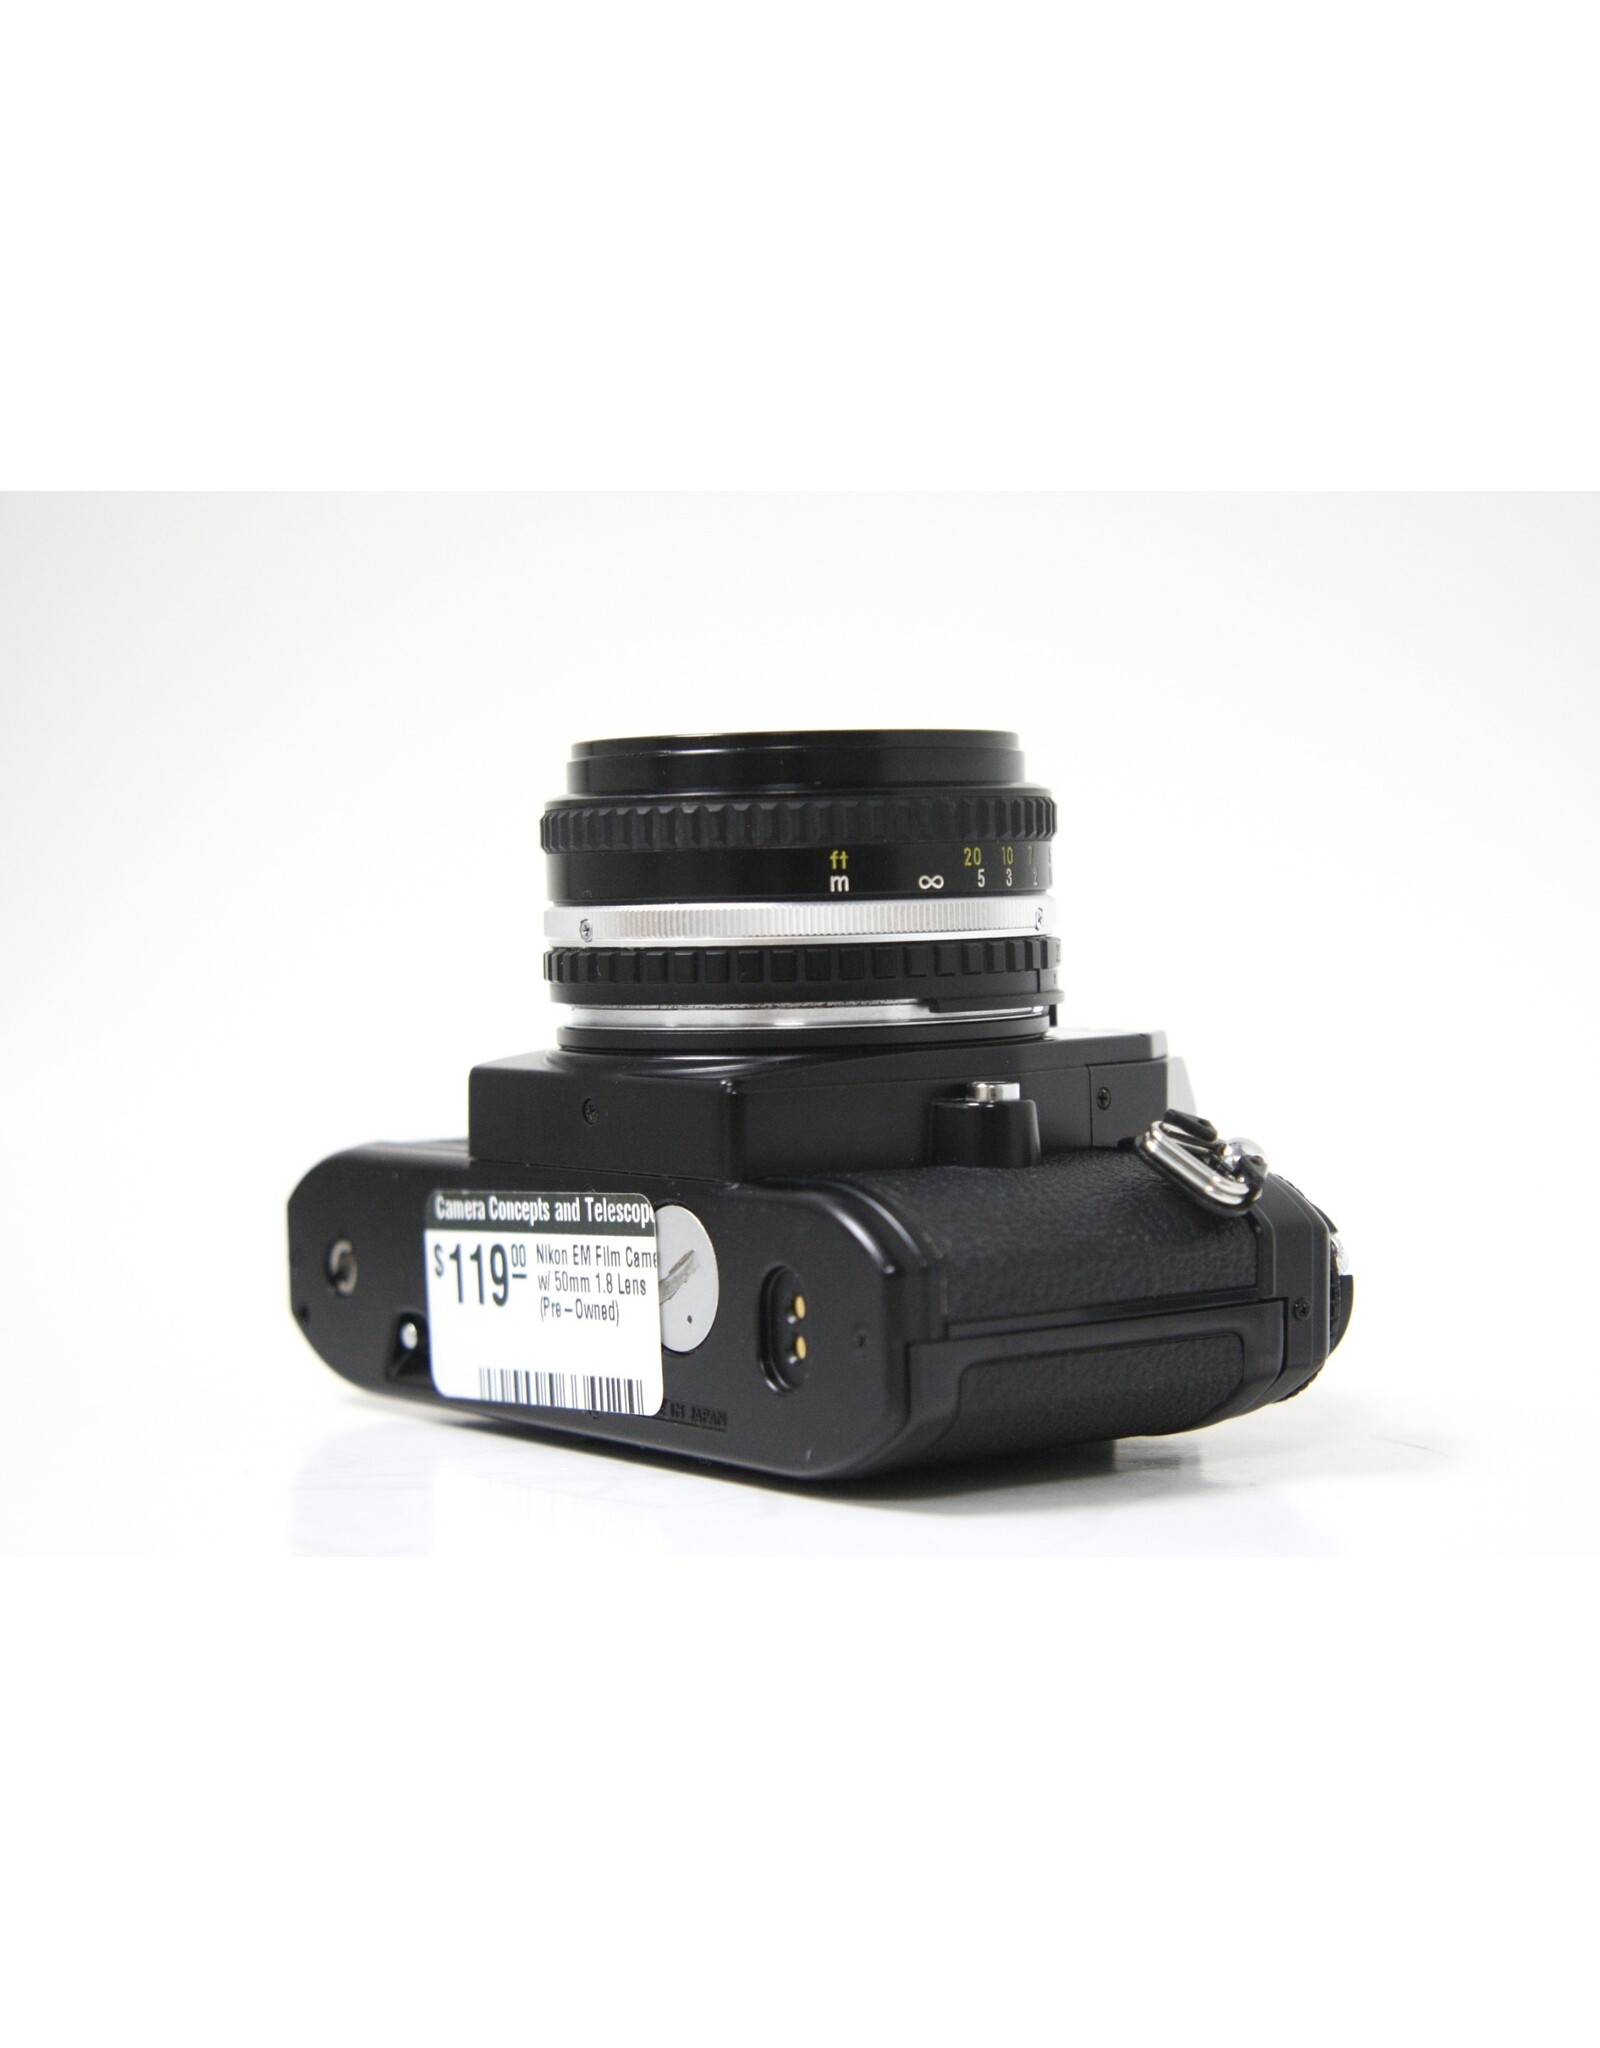 Nikon Nikon EM Film Camera w/ 50mm 1.8 Lens (Pre-Owned)